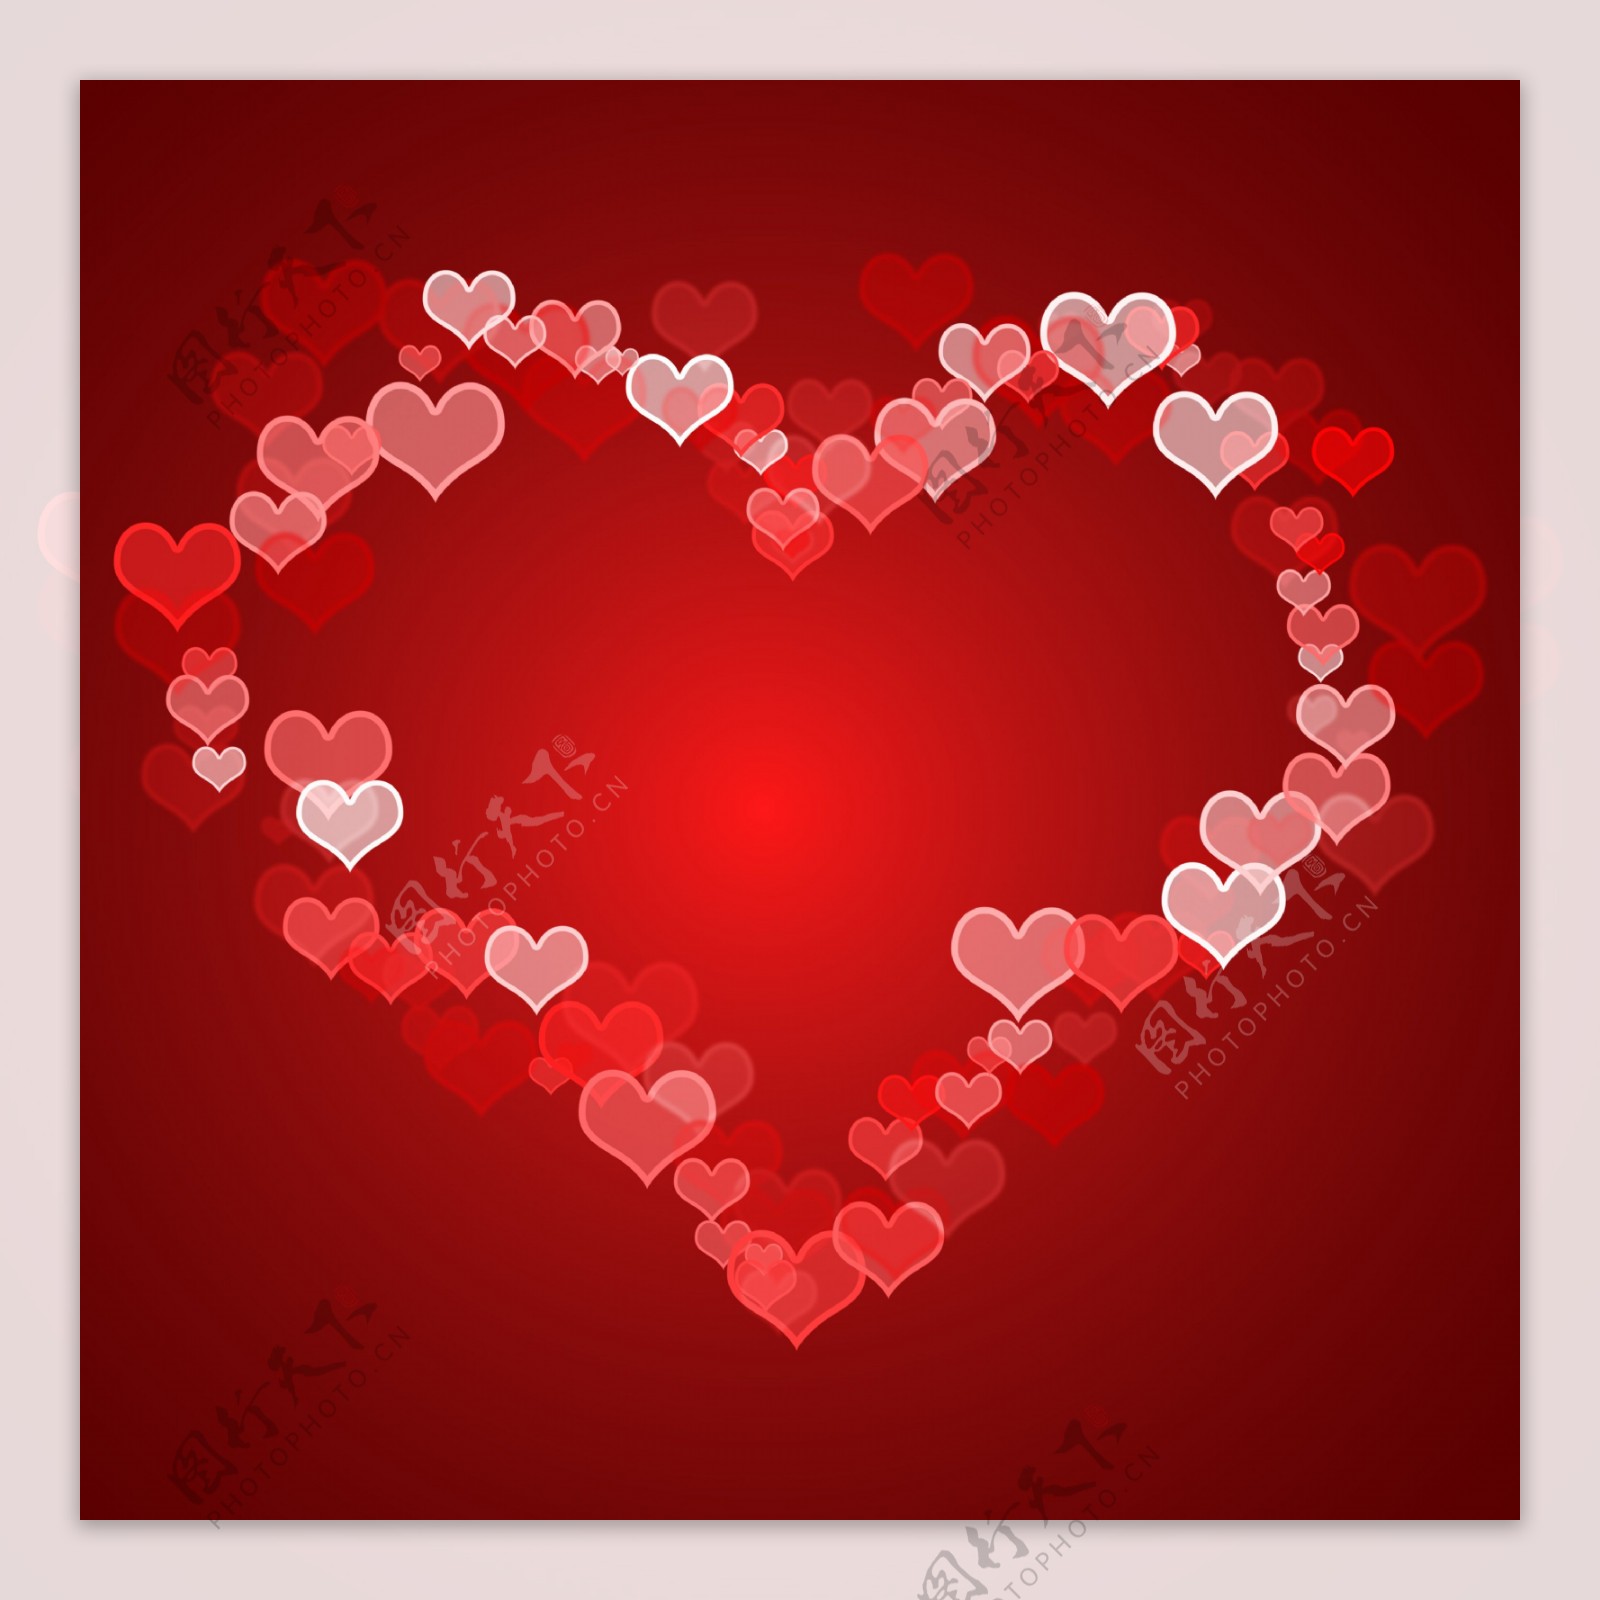 红心背景副本空间展示爱浪漫的情人